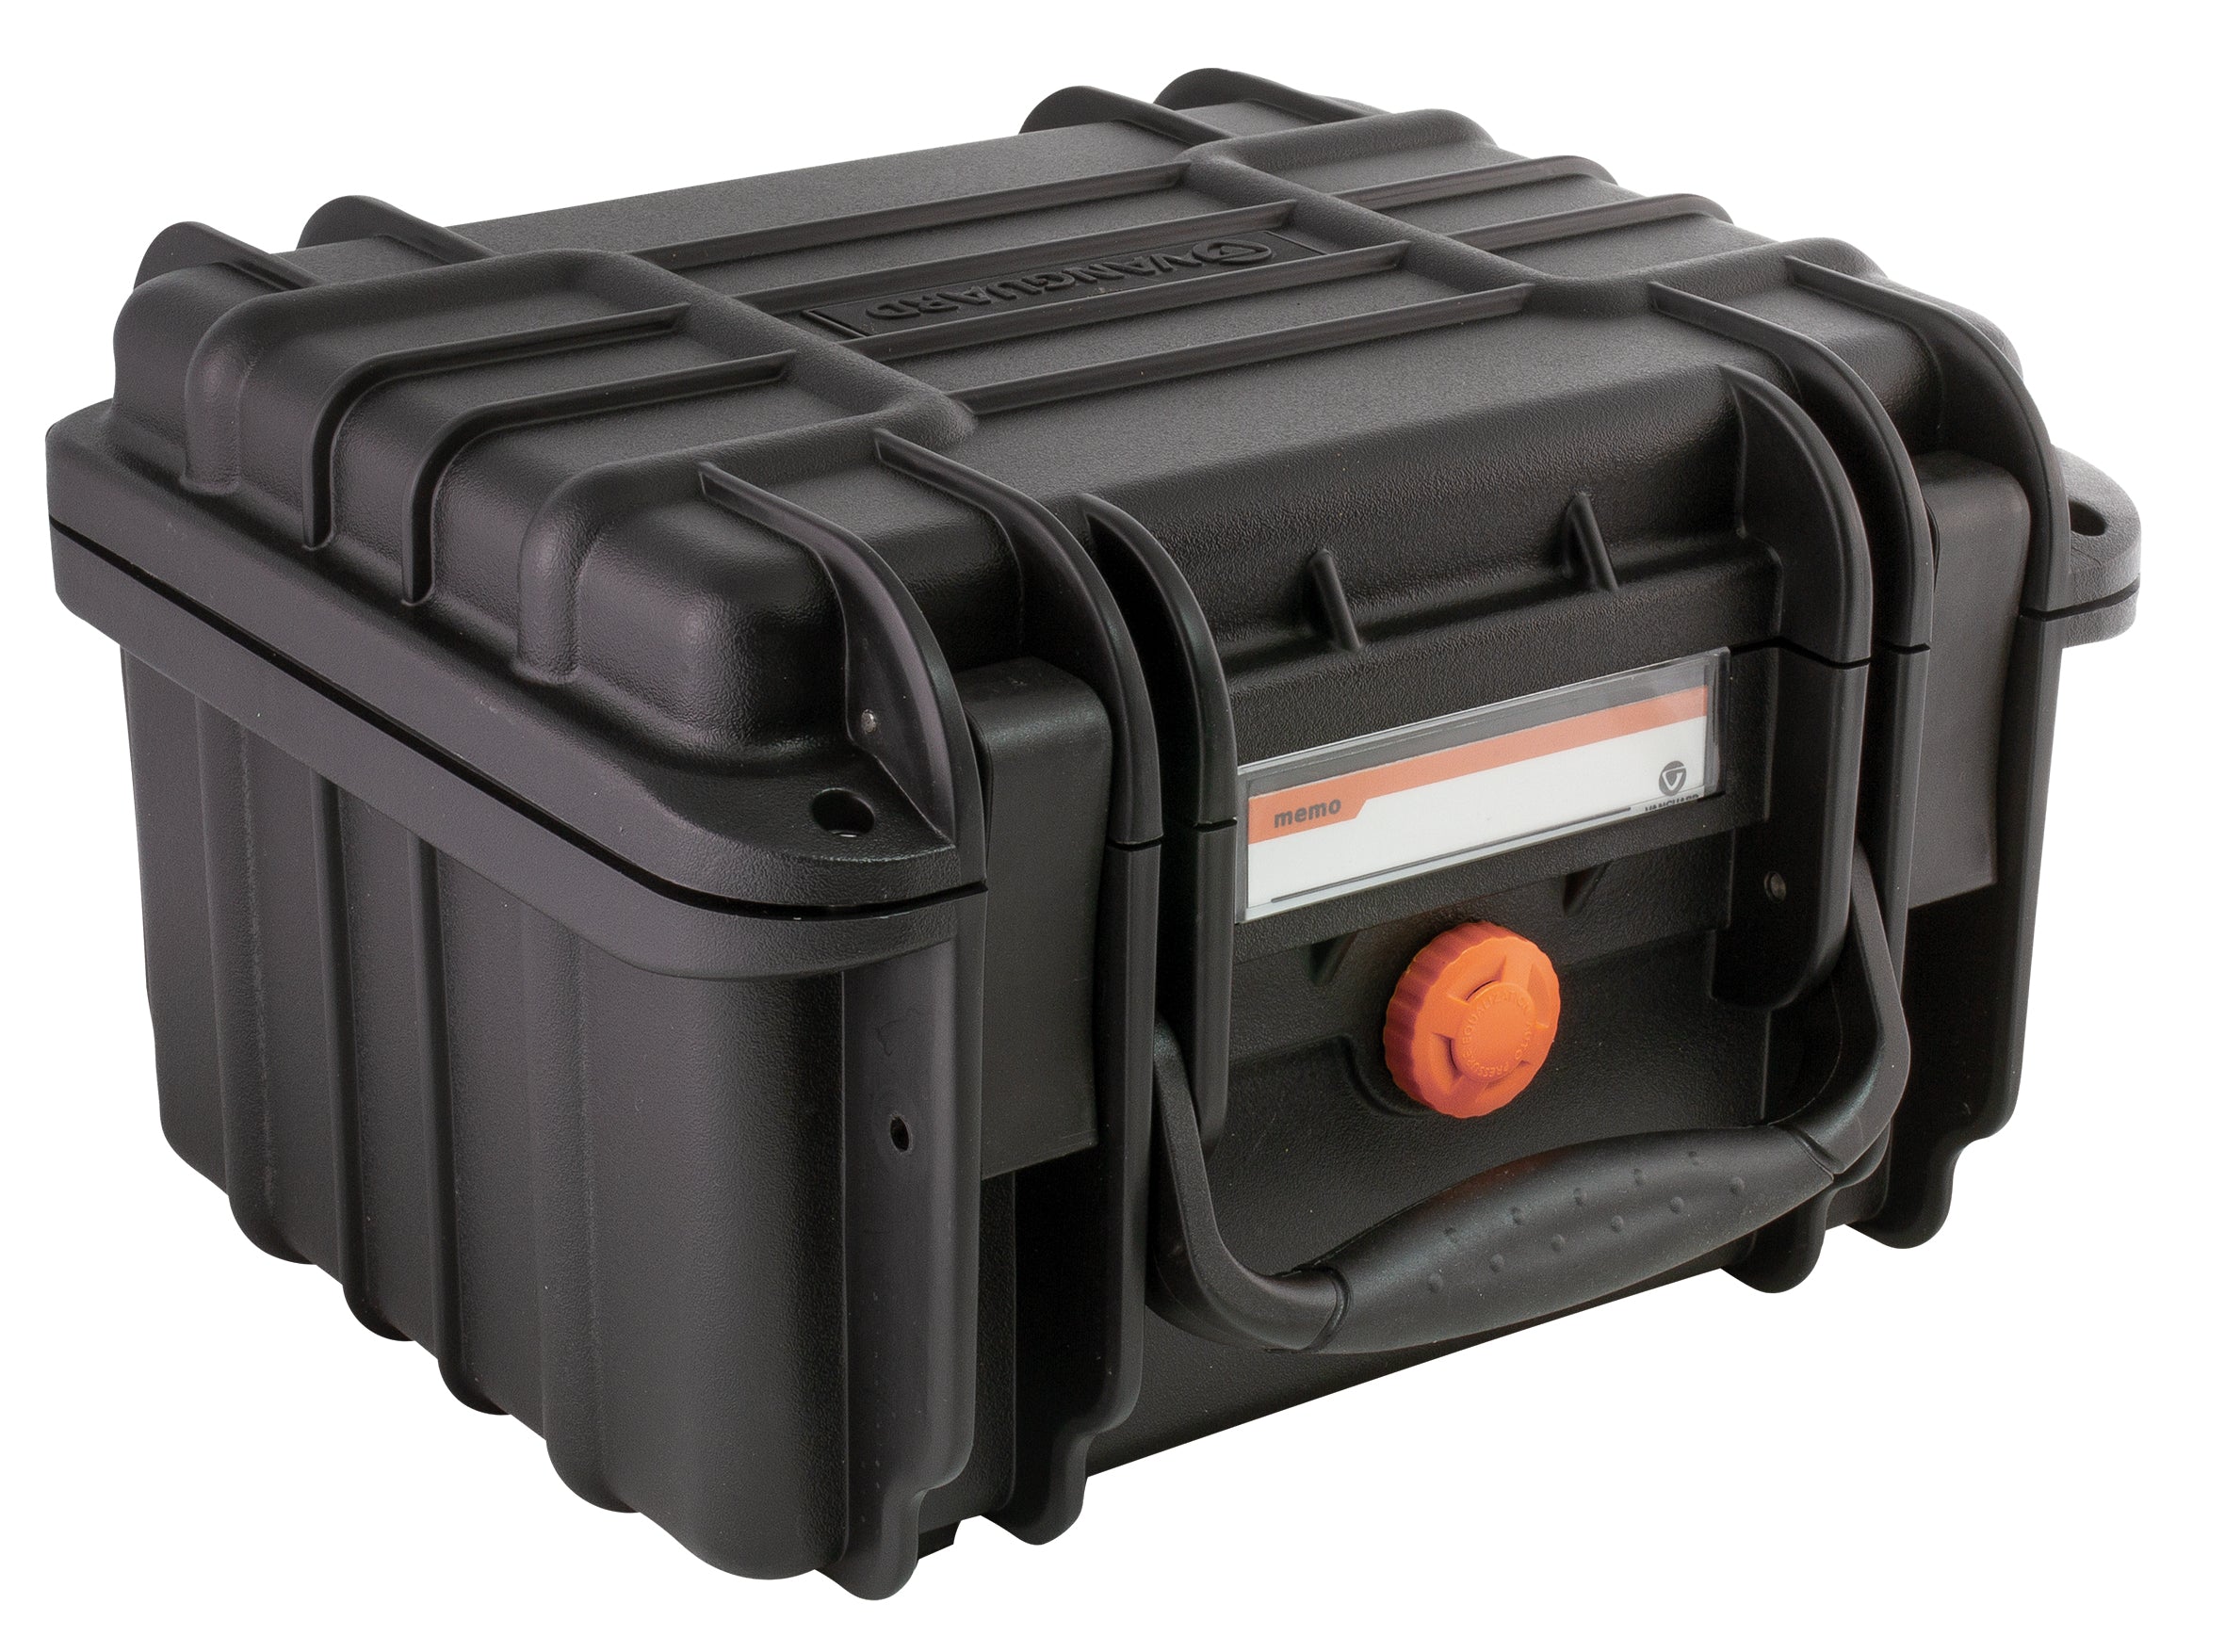 Vanguard Supreme 27F Waterproof Ultra-Tough Camera Case with Foam Inserts